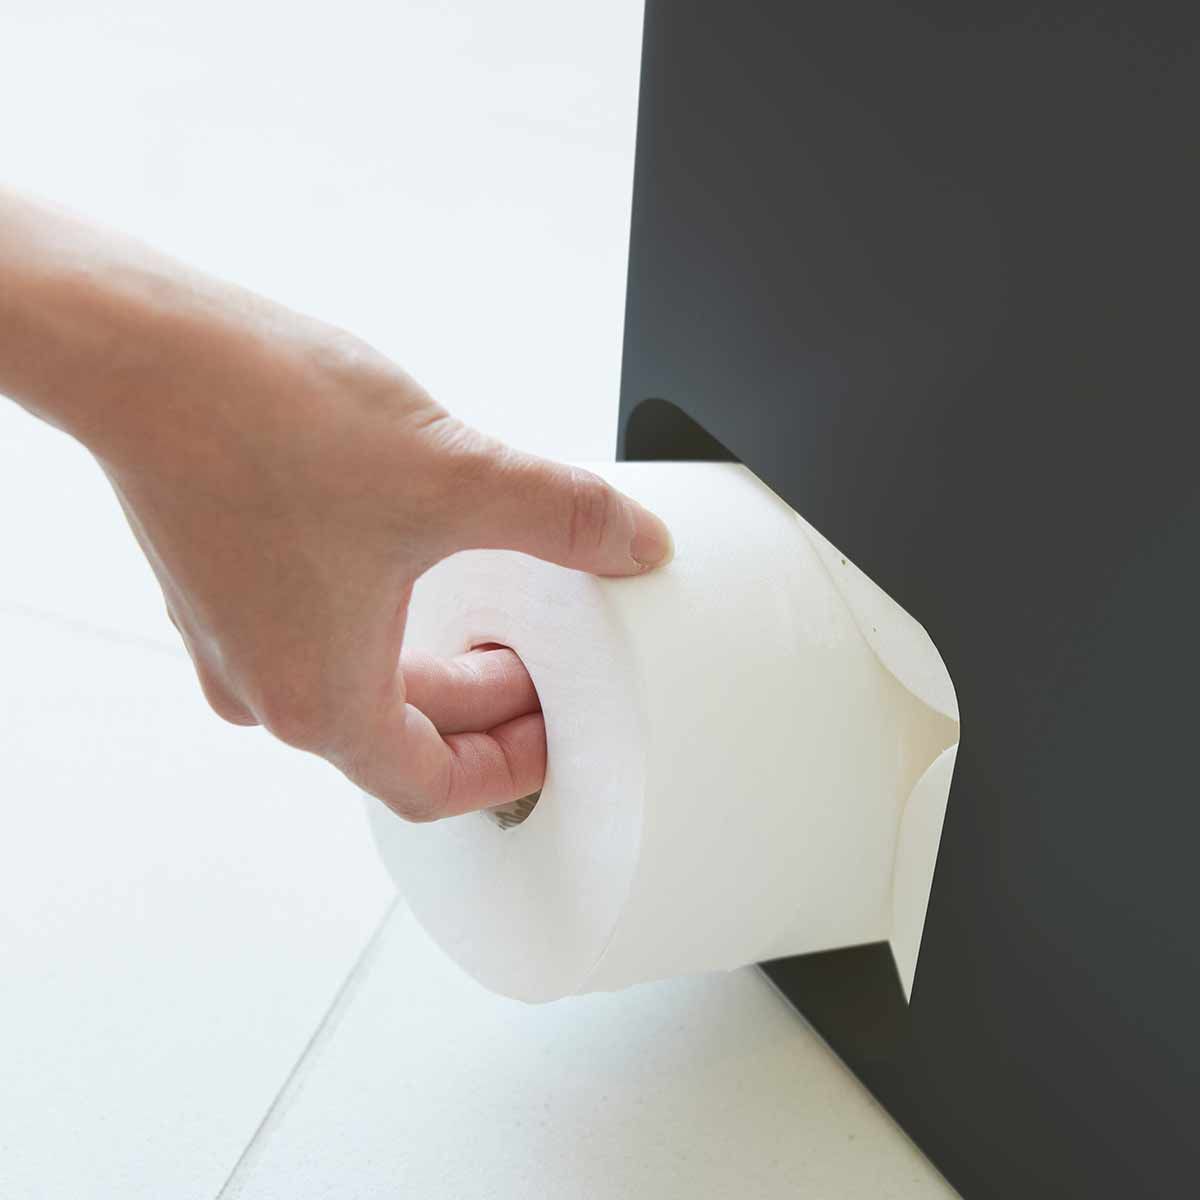 Meuble papier toilette - Shop Triple-D l Du mobilier pour les